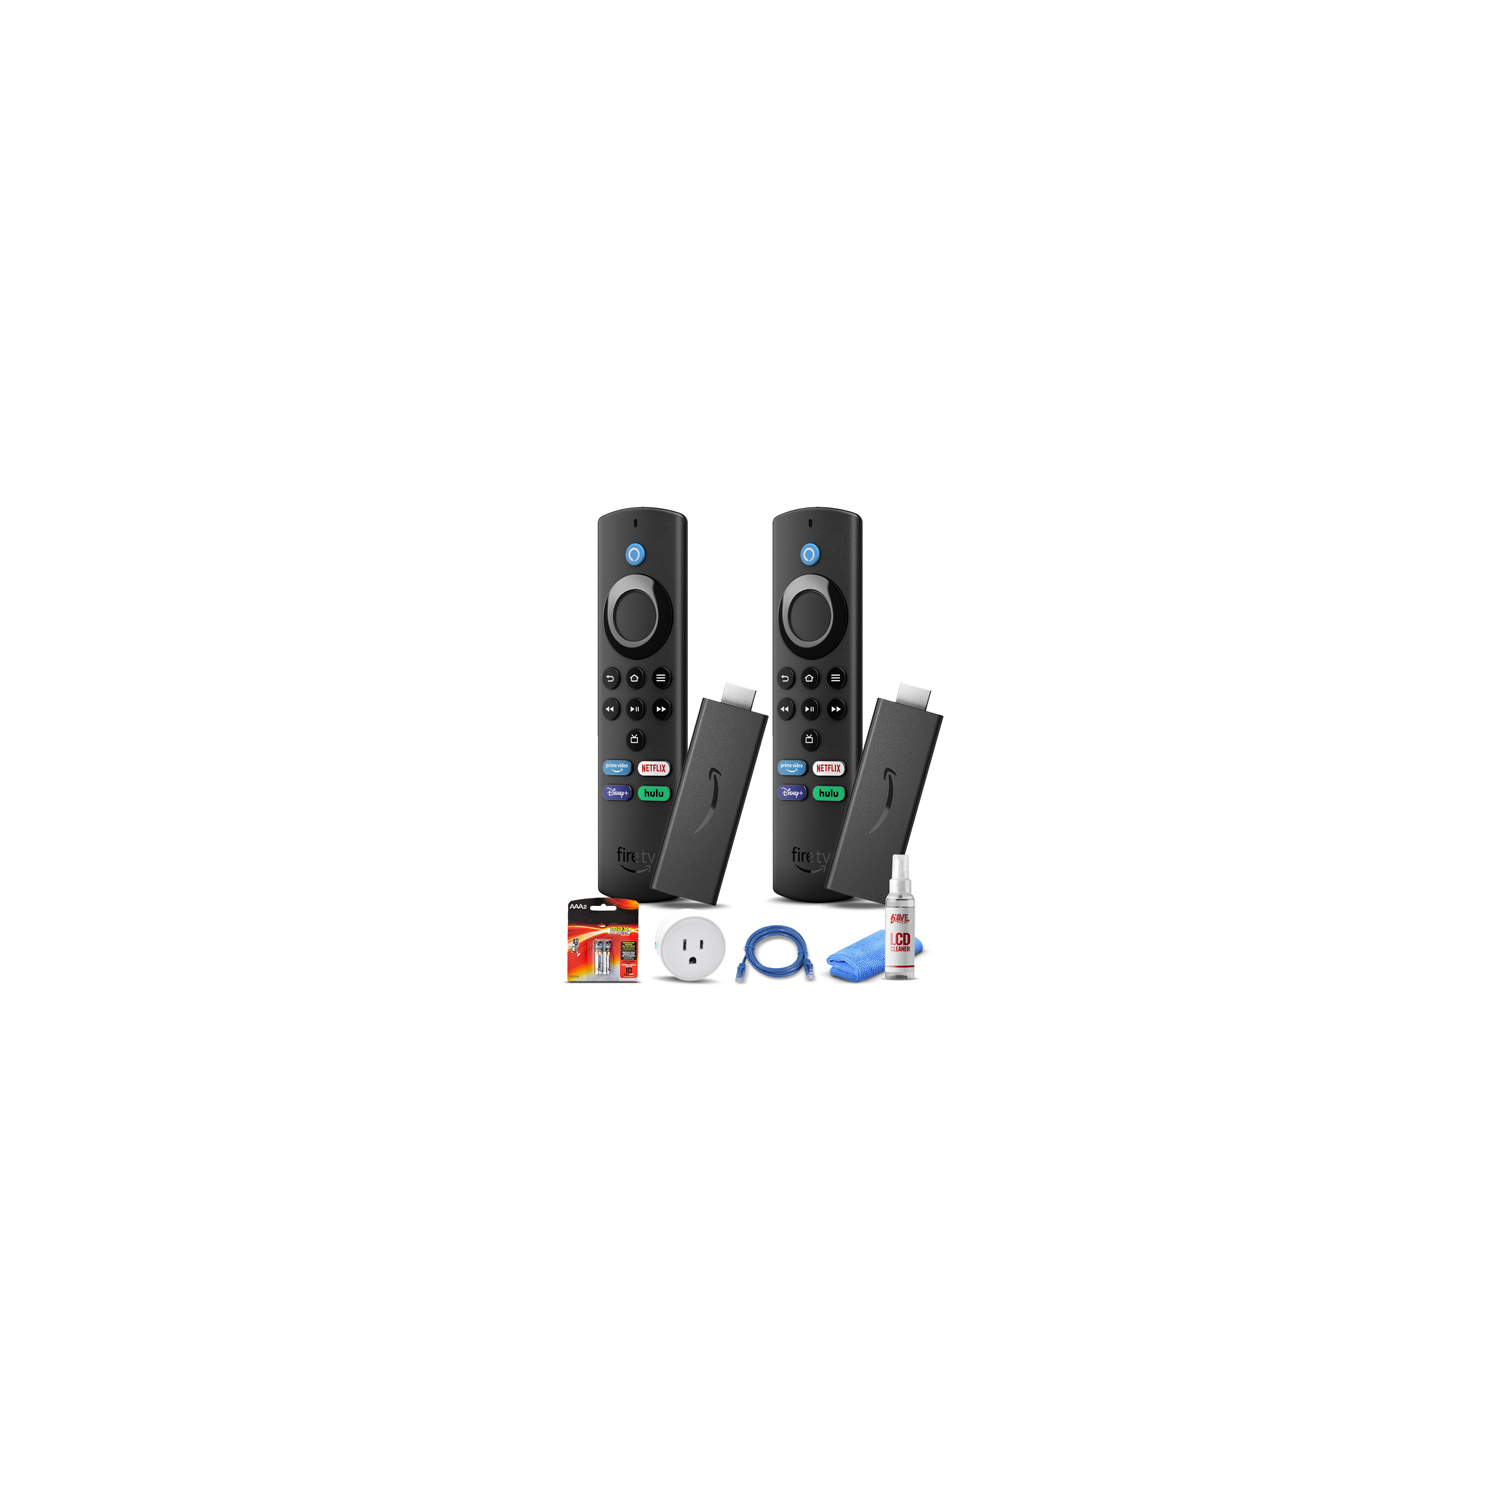 (2) Amazon Fire TV Stick 4K Max + Smart Plug + Cat5 Cable + Batteries Bundle